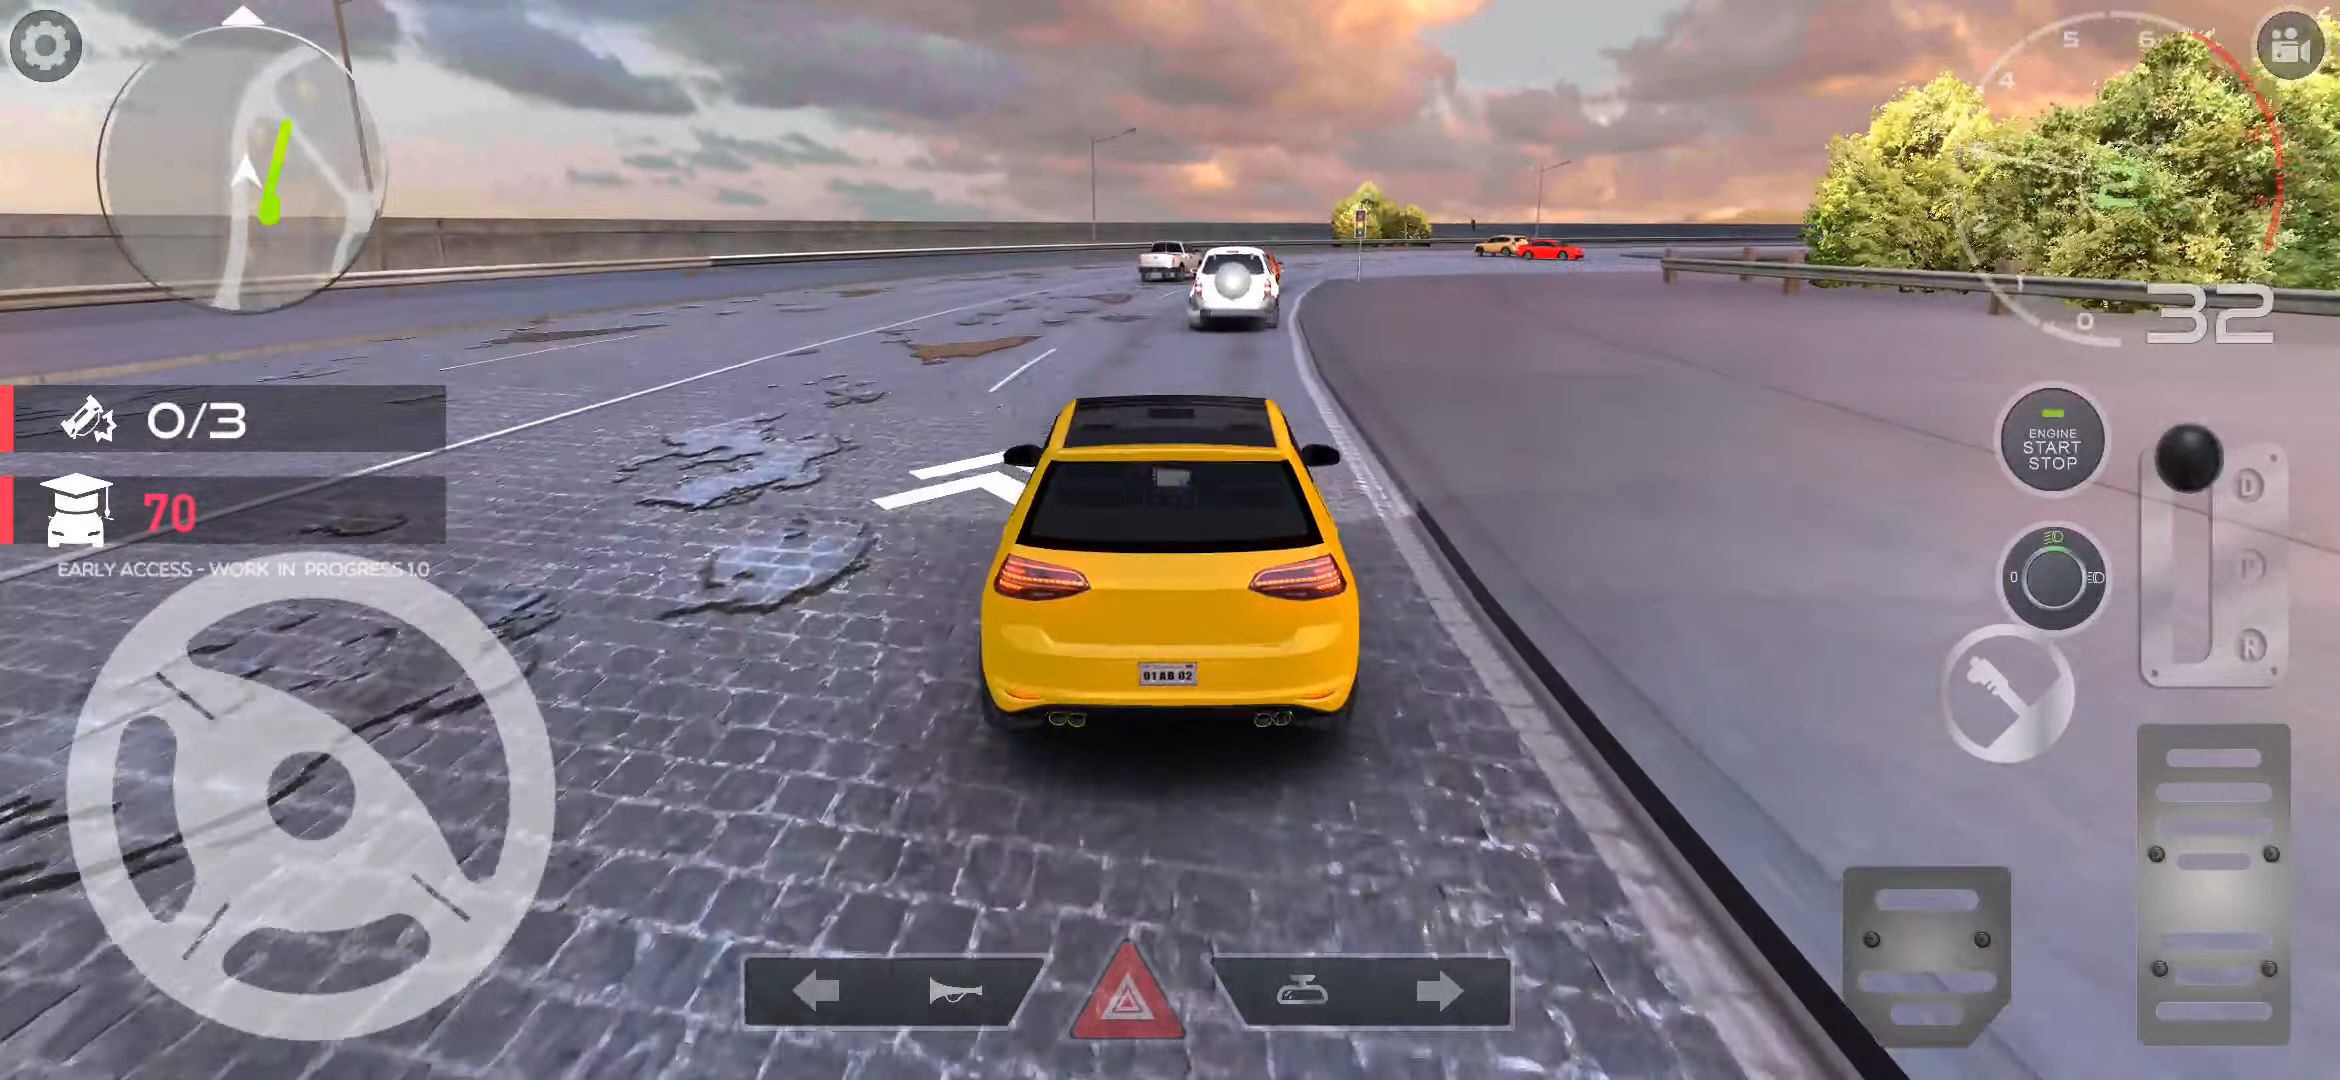 PetrolHead : Traffic Quests - Joyful City Driving captura de pantalla 1